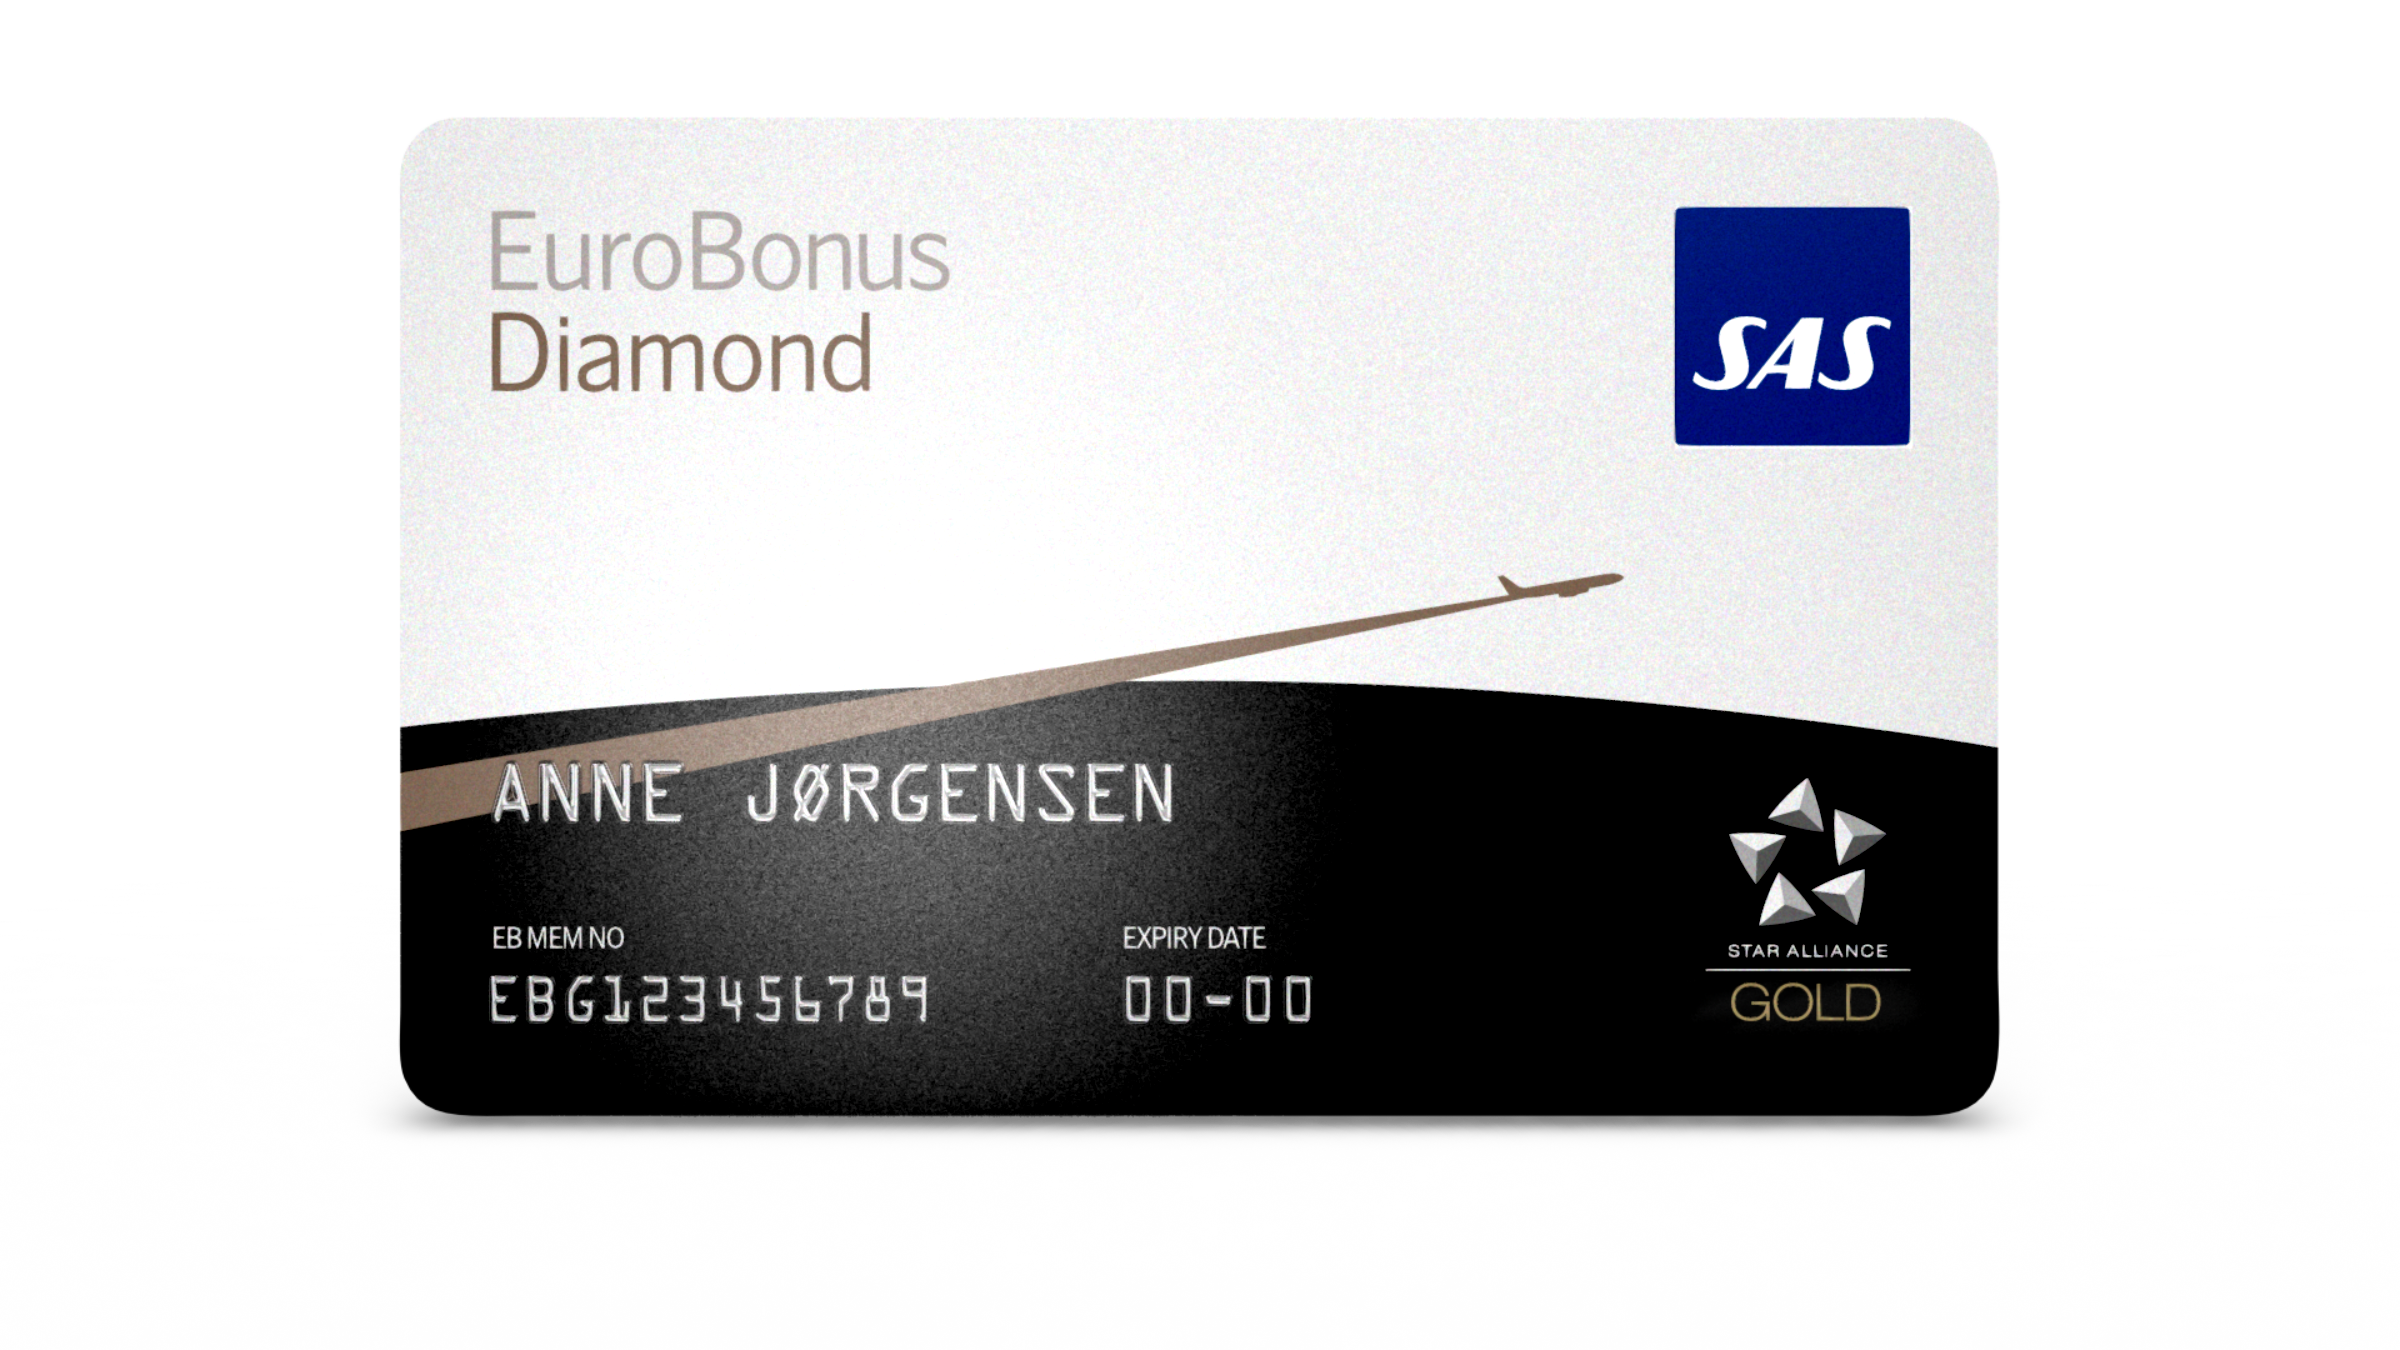 EuroBonus Diamond membership card